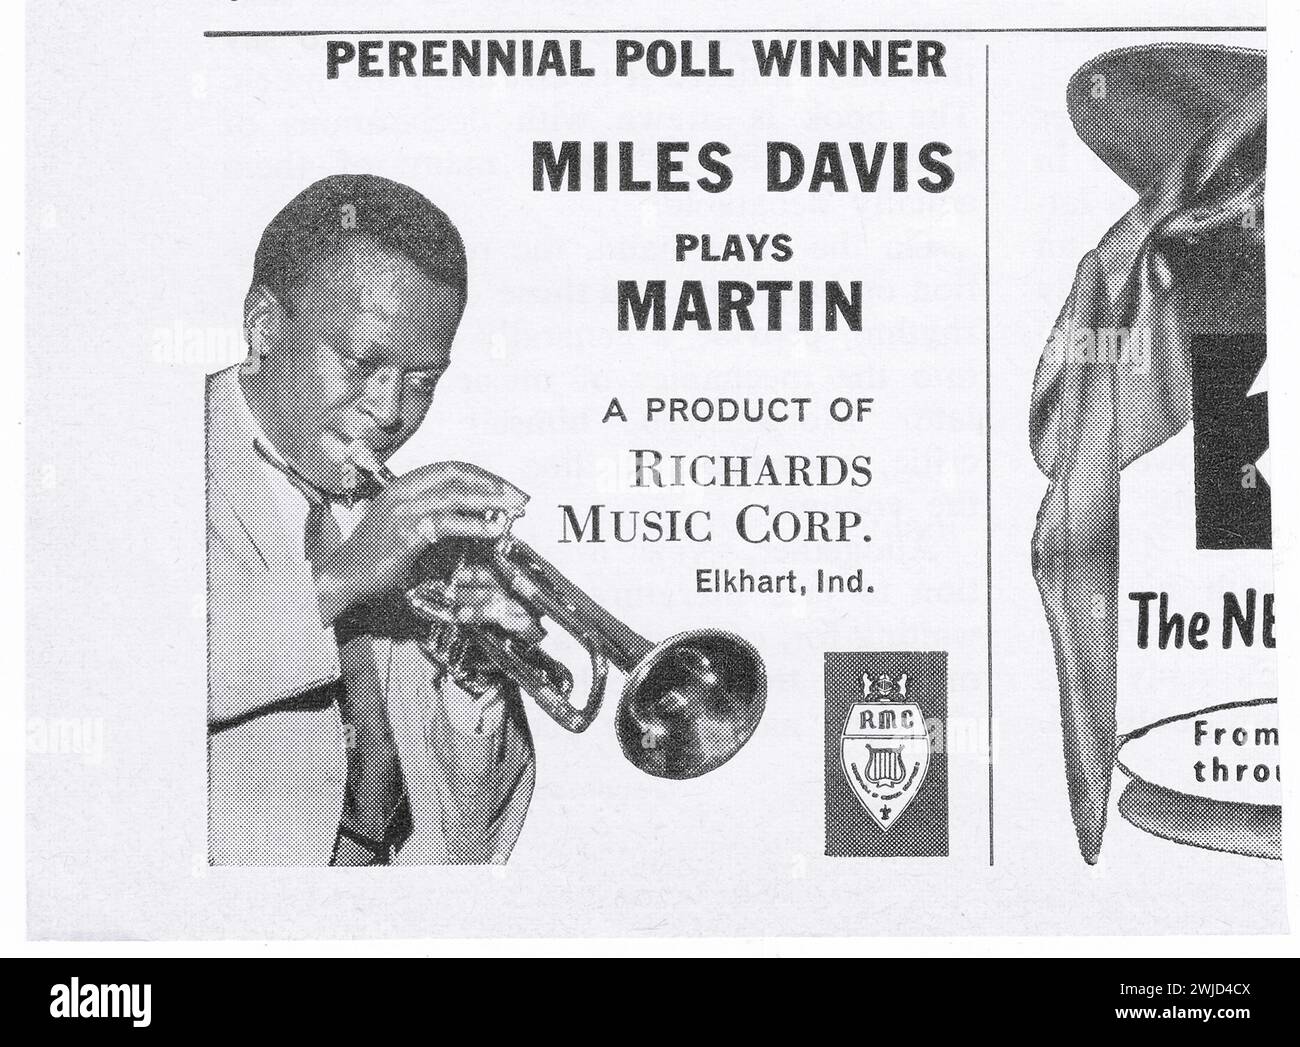 Ein Werbespot für Martin-Trompeten mit Jazz-Superstar Miles Davis. Aus einem Musikmagazin der frühen 1960er Jahre. Stockfoto